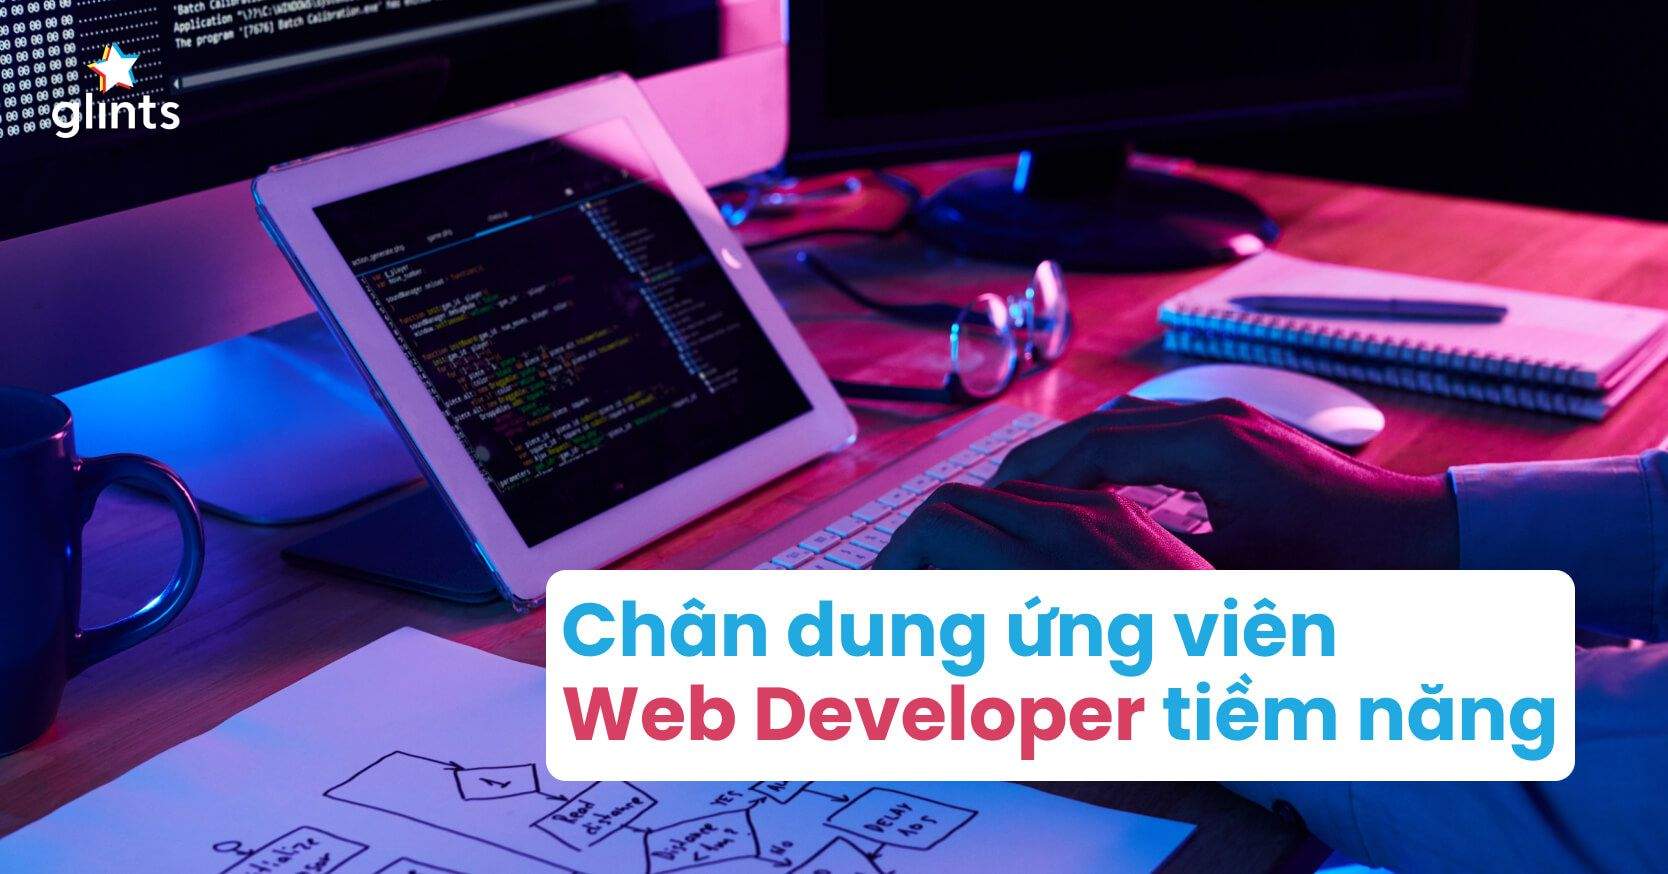 Web Developer Là Gì? Chân Dung Ứng Viên Web Developer Tiềm Năng